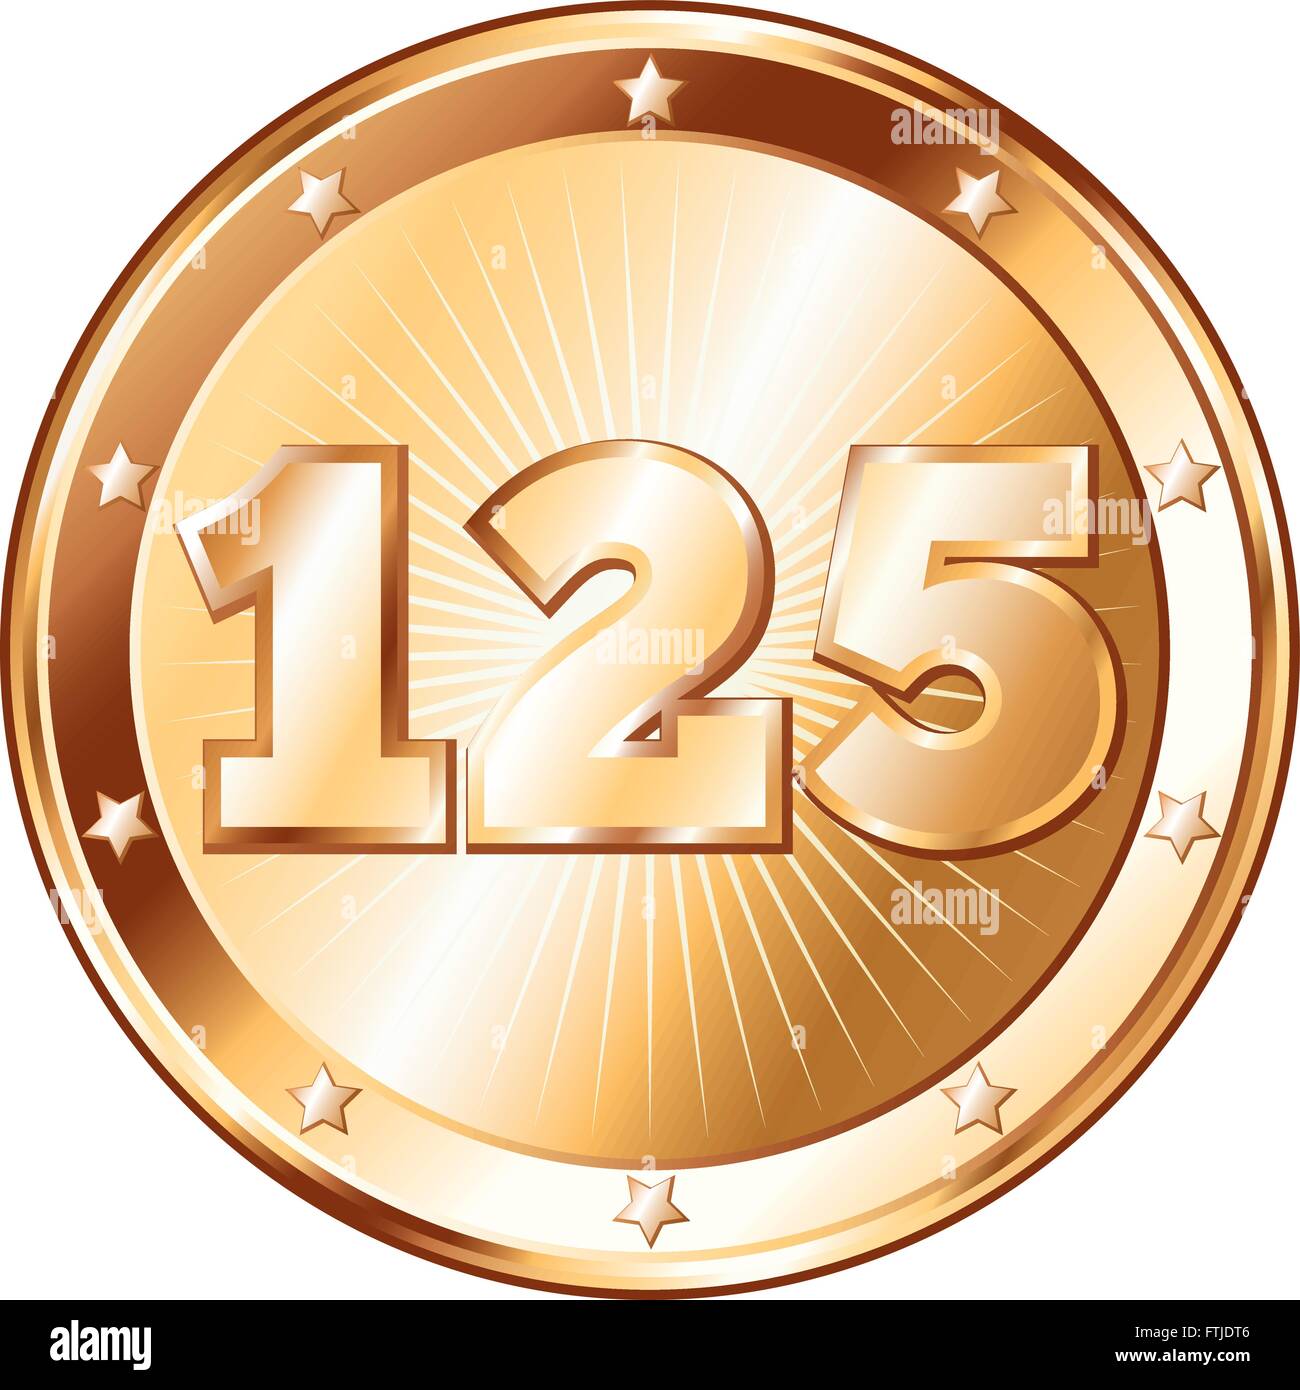 Round a forma di cerchio badge di metallo / sigillo di approvazione in un look di bronzo e il numero di un centinaio di venticinque. Illustrazione Vettoriale